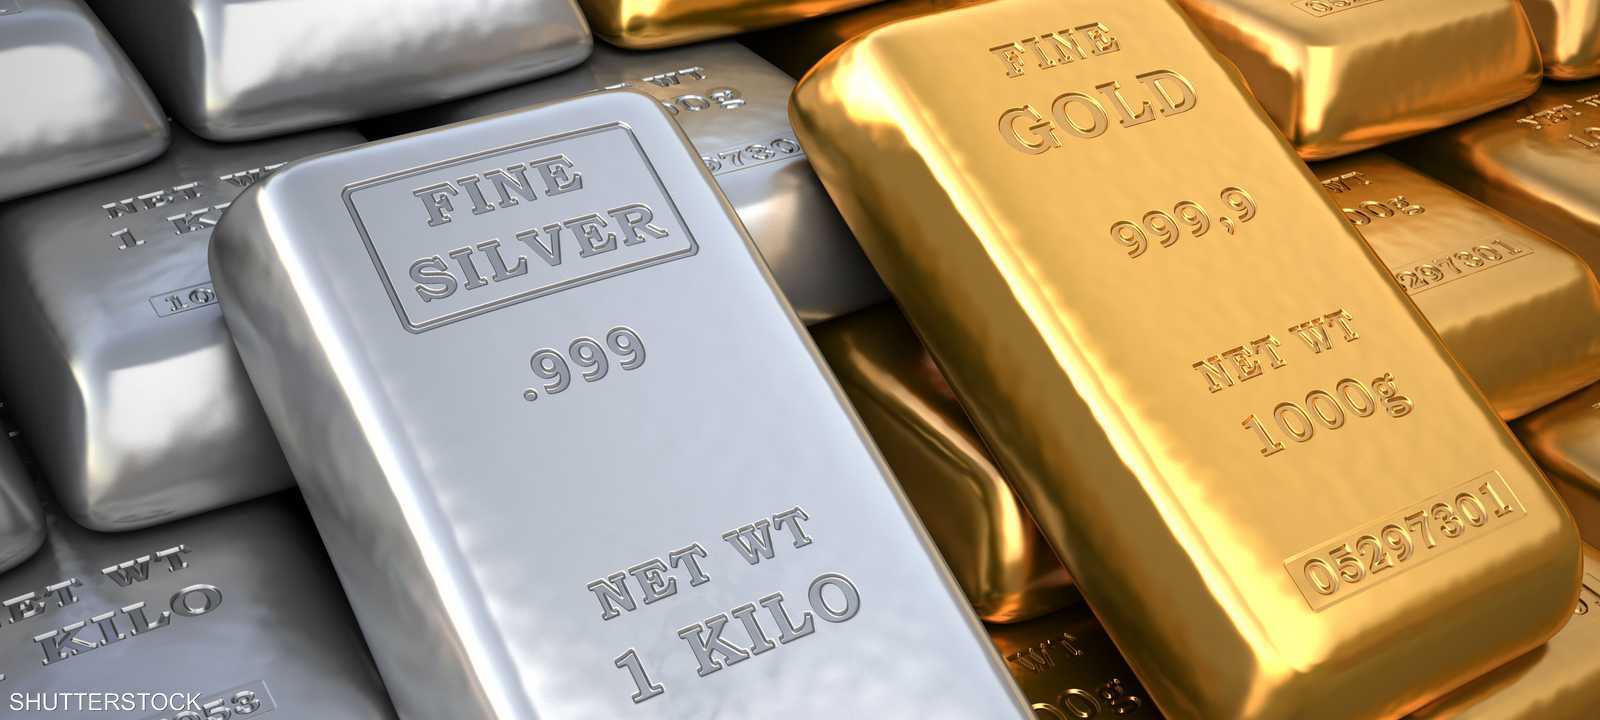 الذهب يعتبر وسيلة للتحوط ضد التضخم